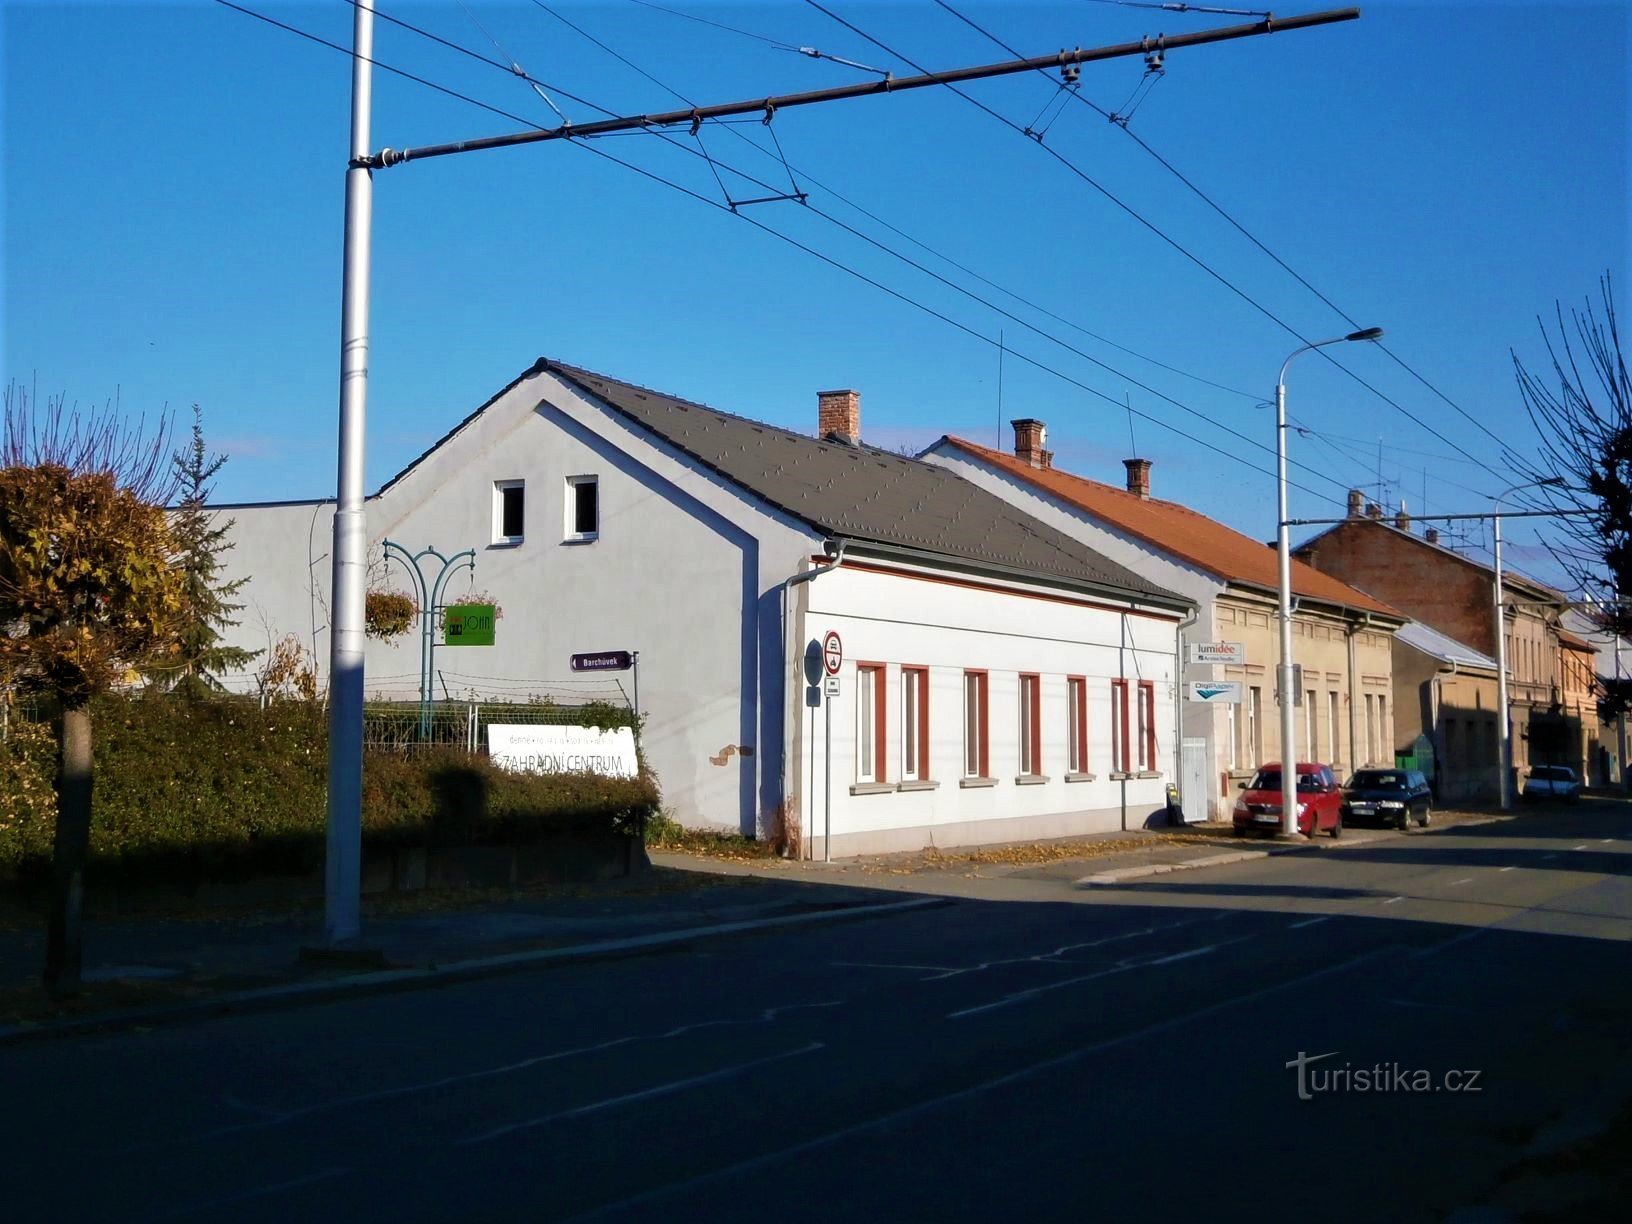 Είσοδος στο Barchůvk και το σπίτι No. 142 (Hradec Králové, 13.11.2016/XNUMX/XNUMX)